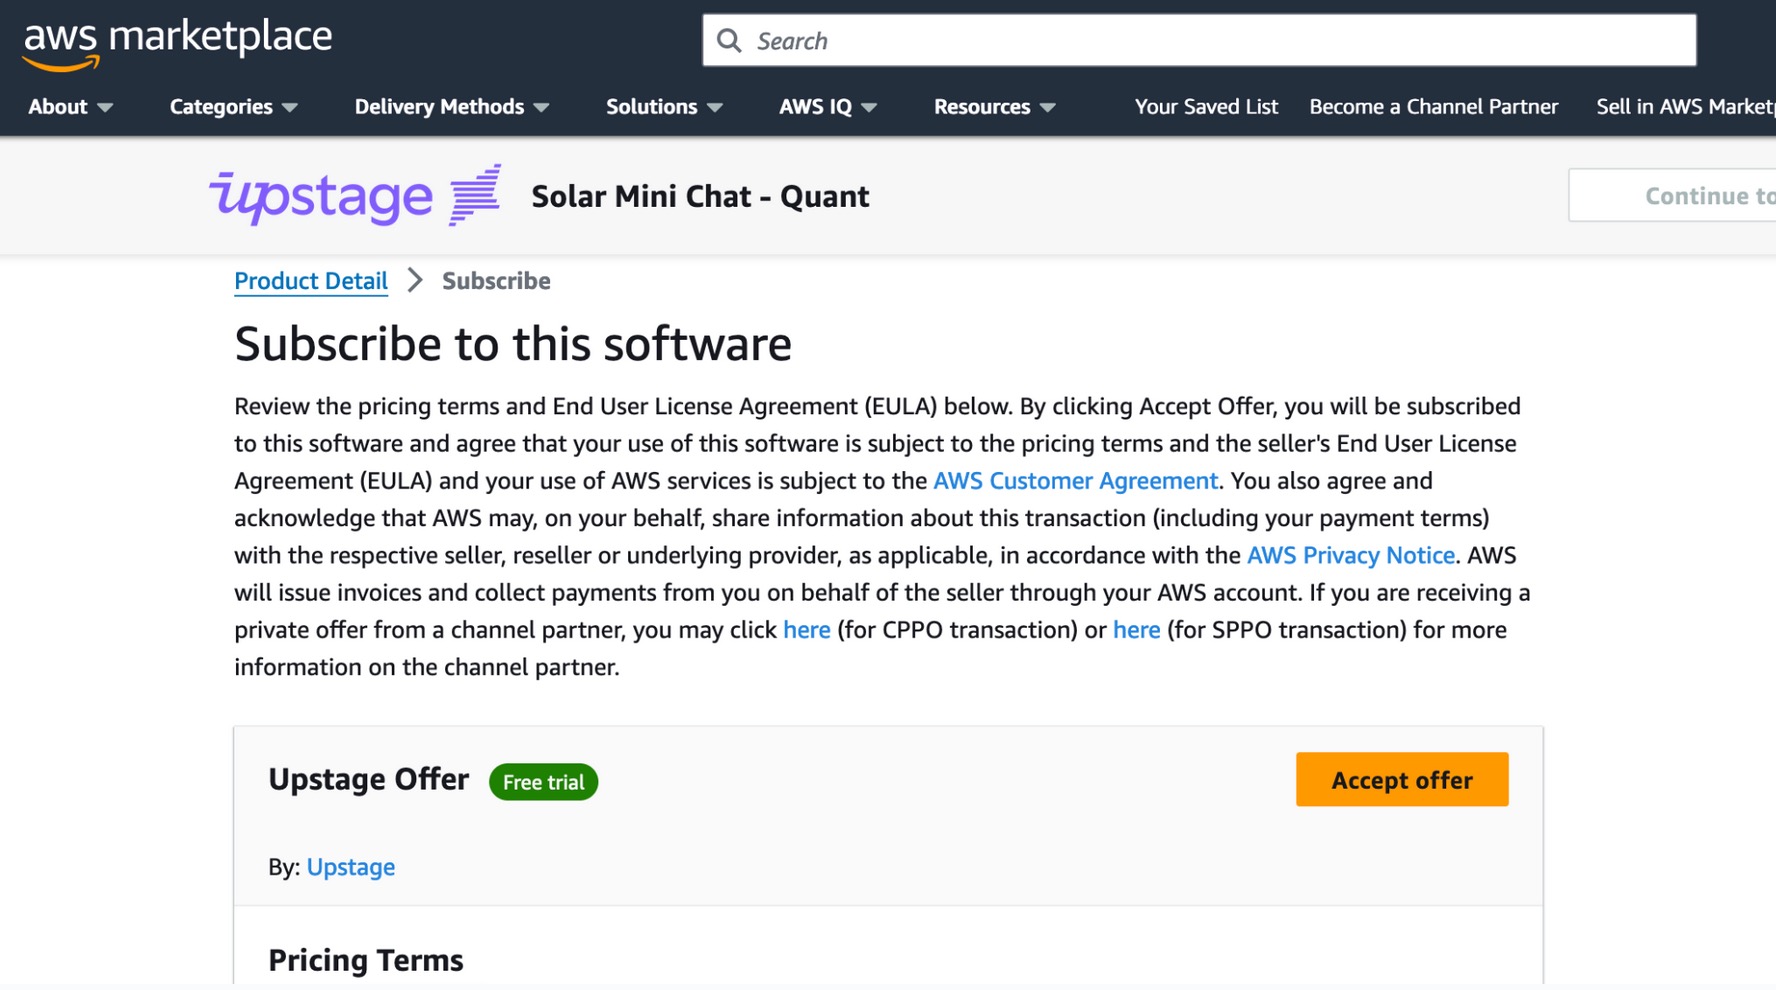 Figure - Accepter l'offre du modèle solaire sur AWS Marketplace